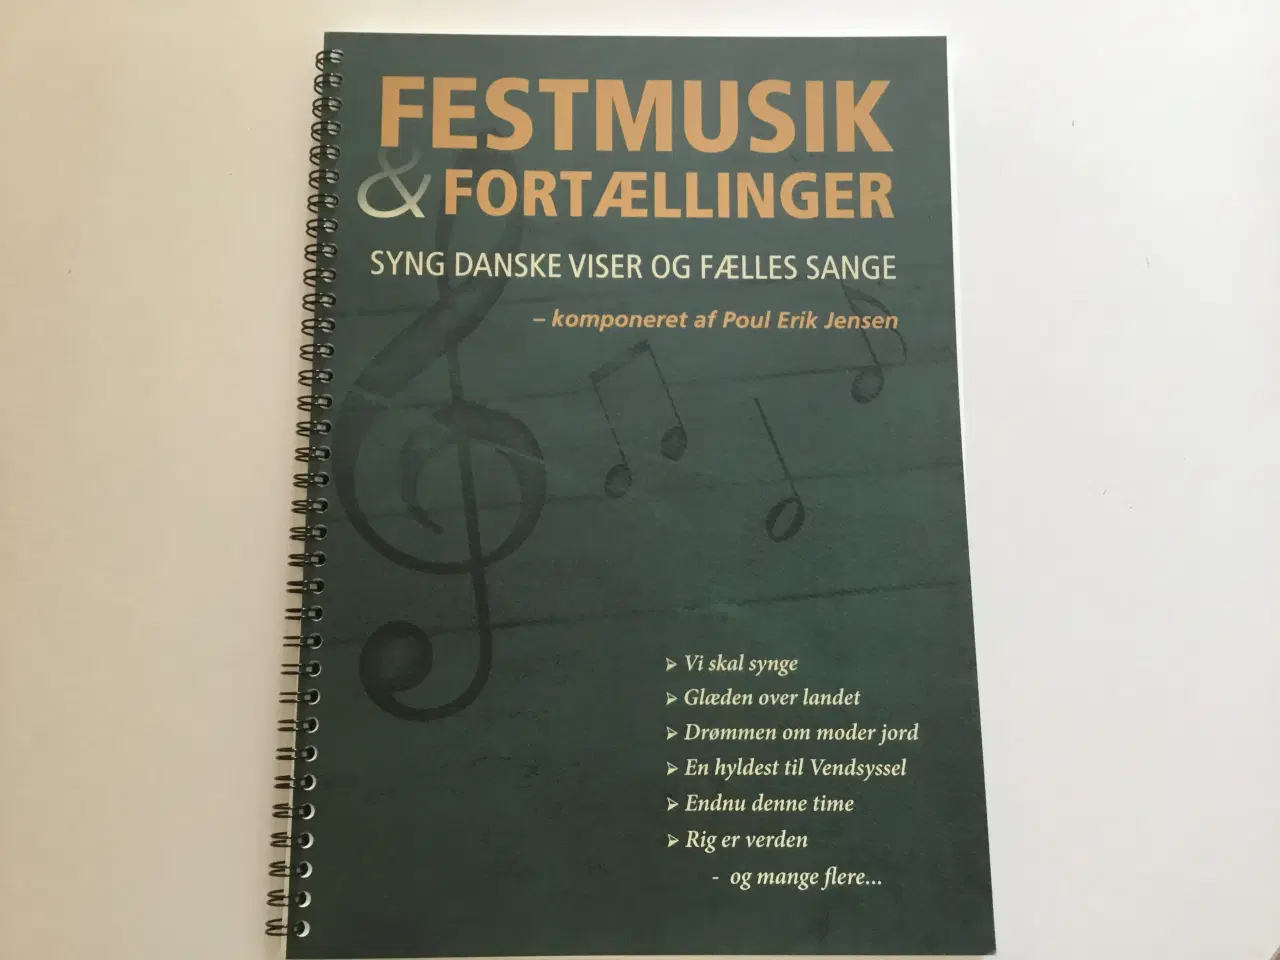 Billede 1 - Node sangbog "Festmusik & Fortællinger" 